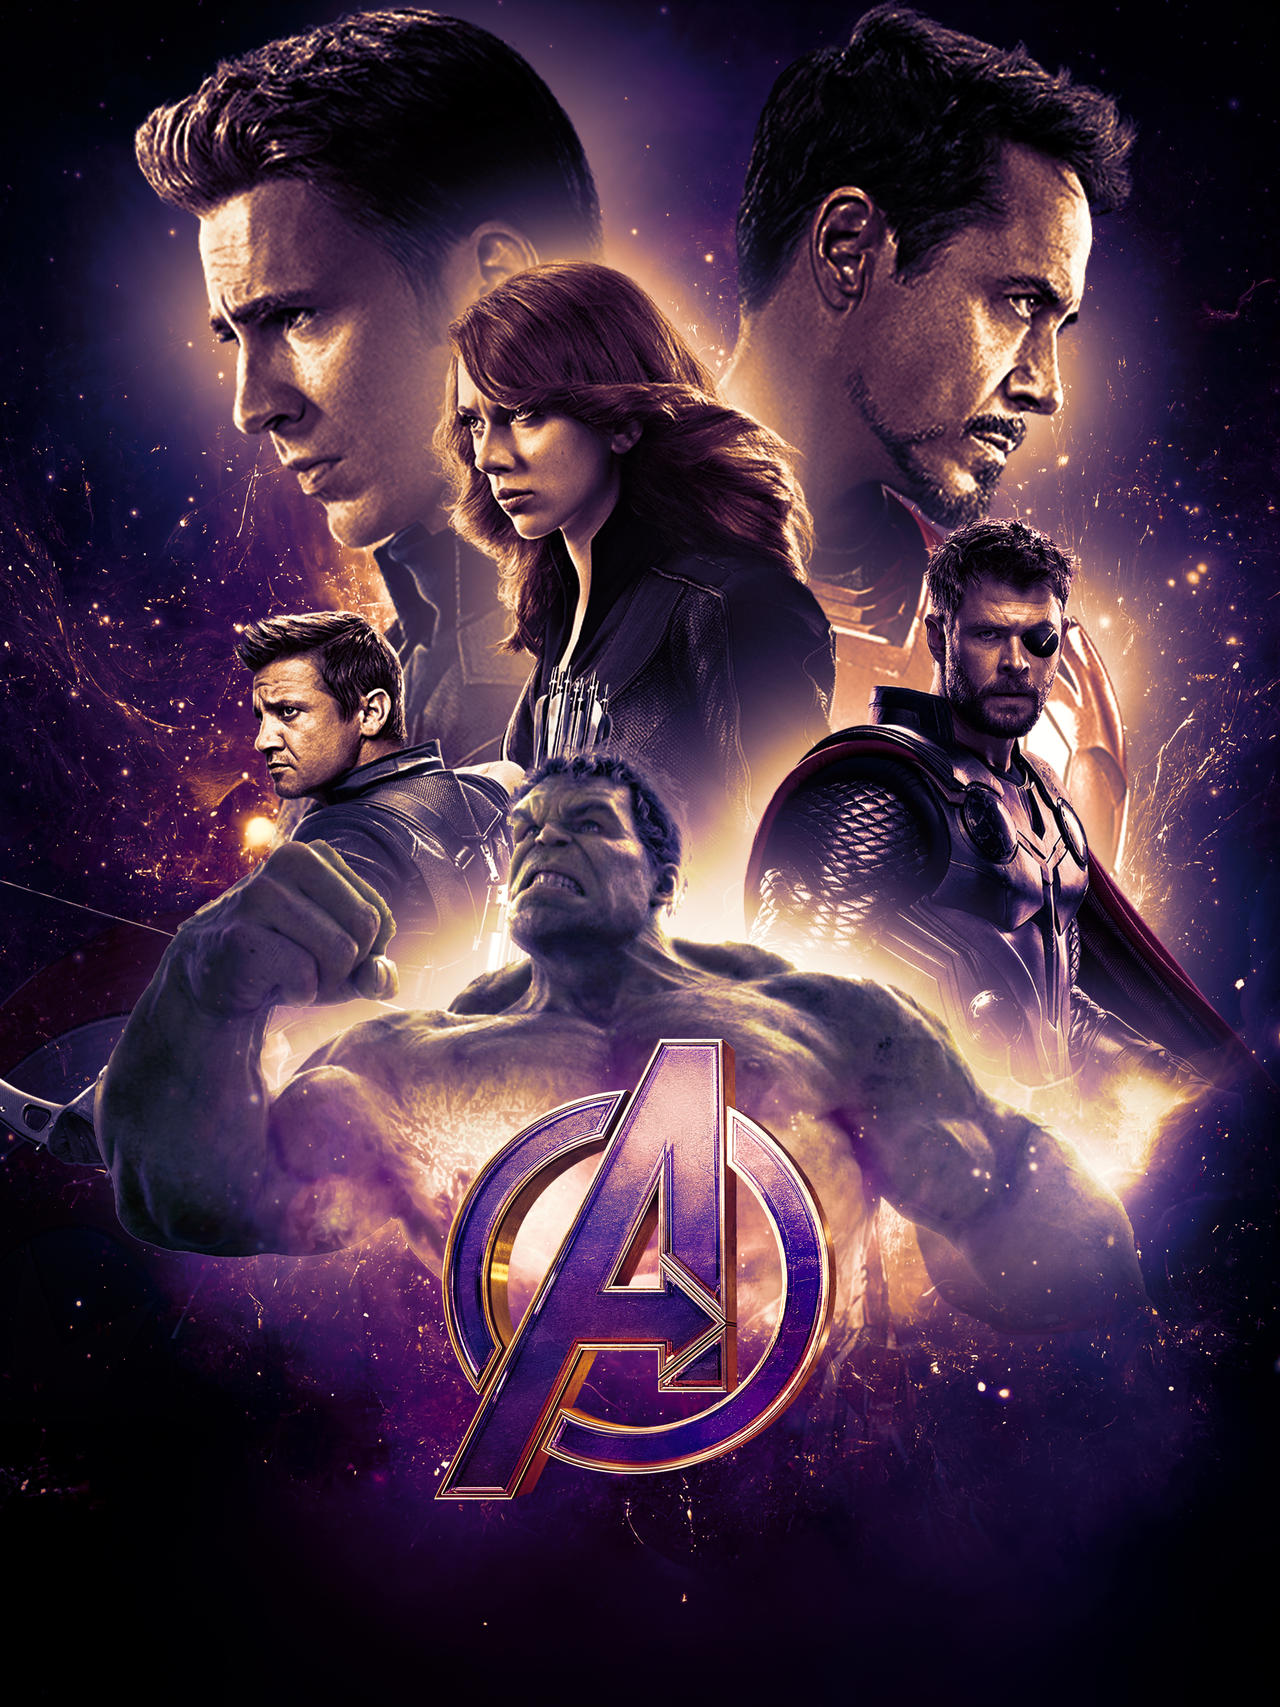 Avengers: Endgame' Poster 2